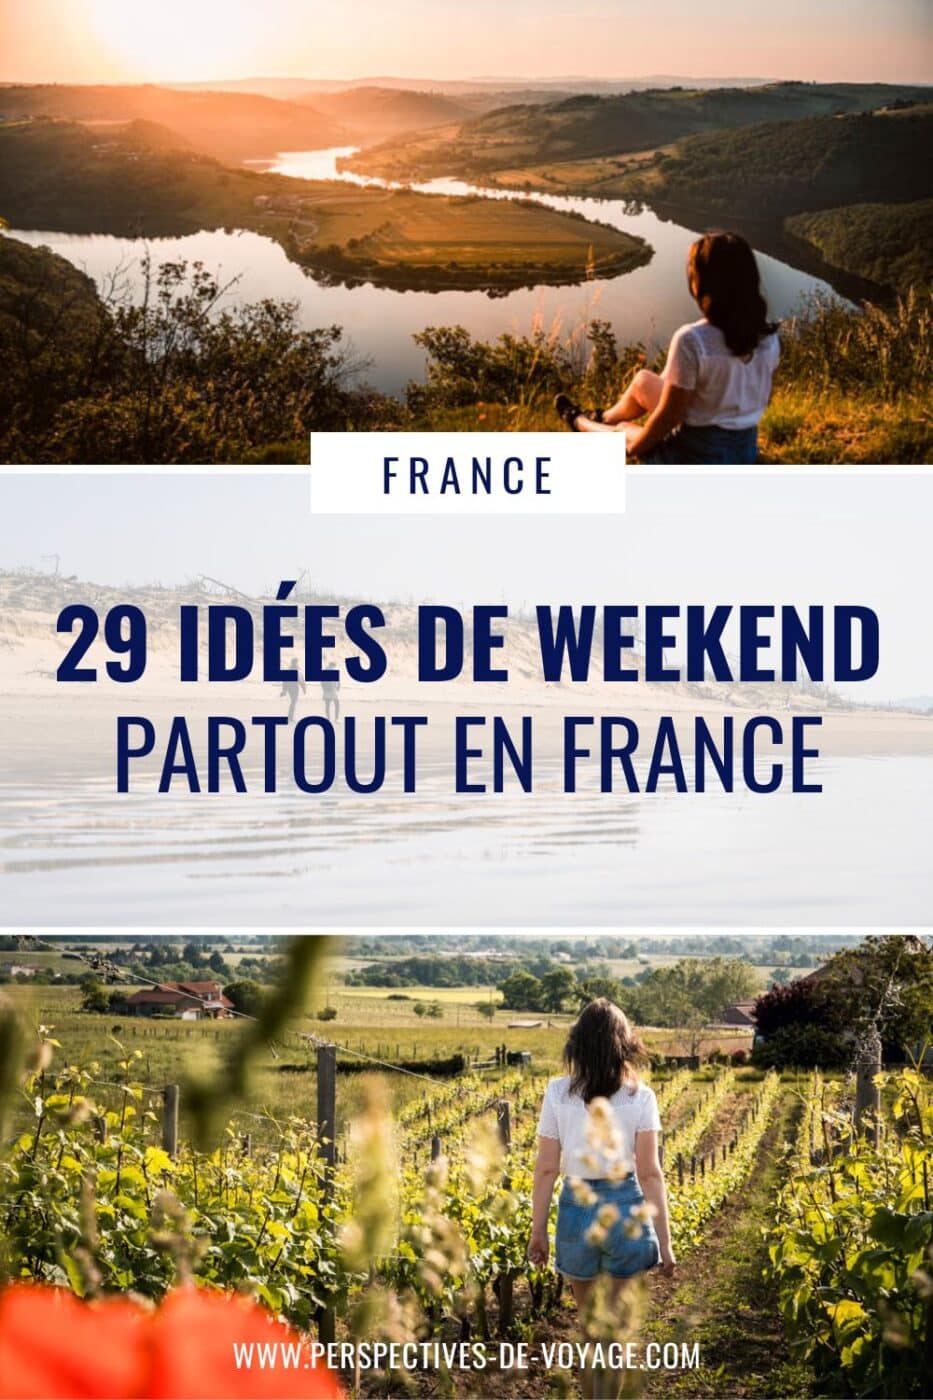 29 idées de weekend en France